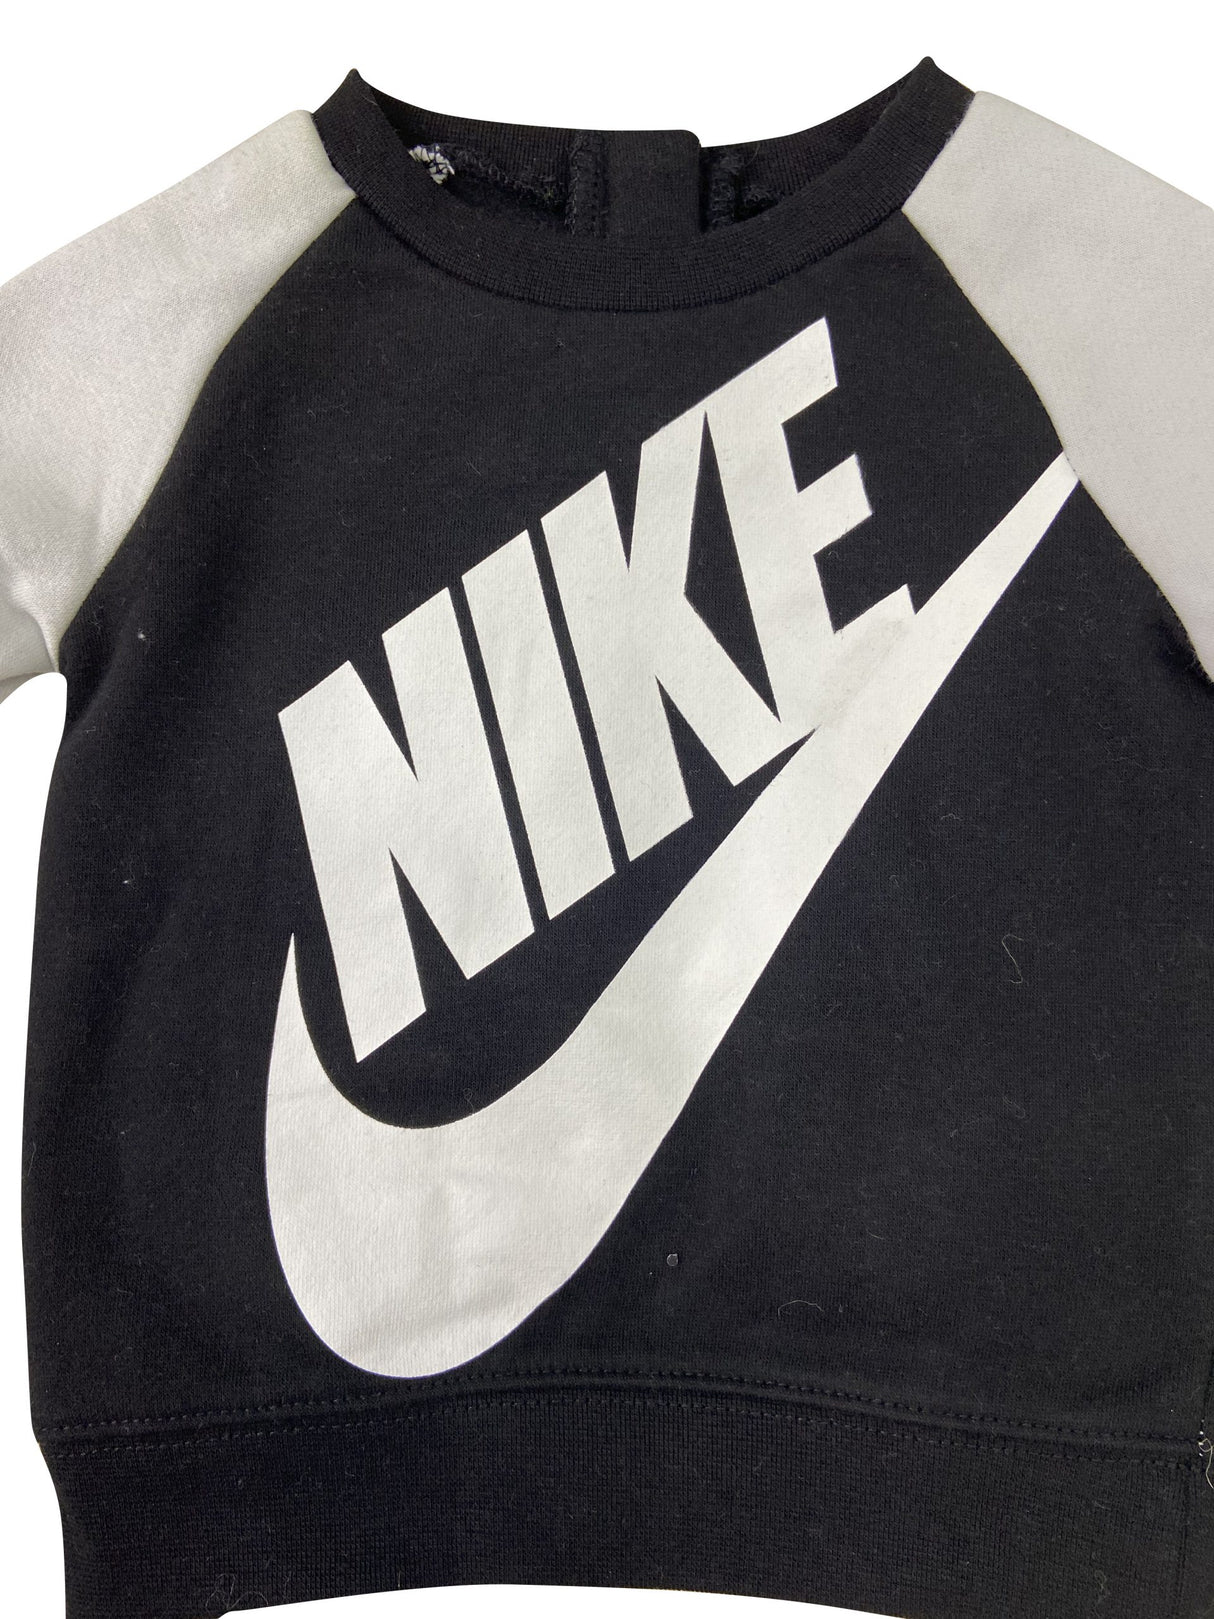 Nike Tuta Black/White Infant 66f563 023